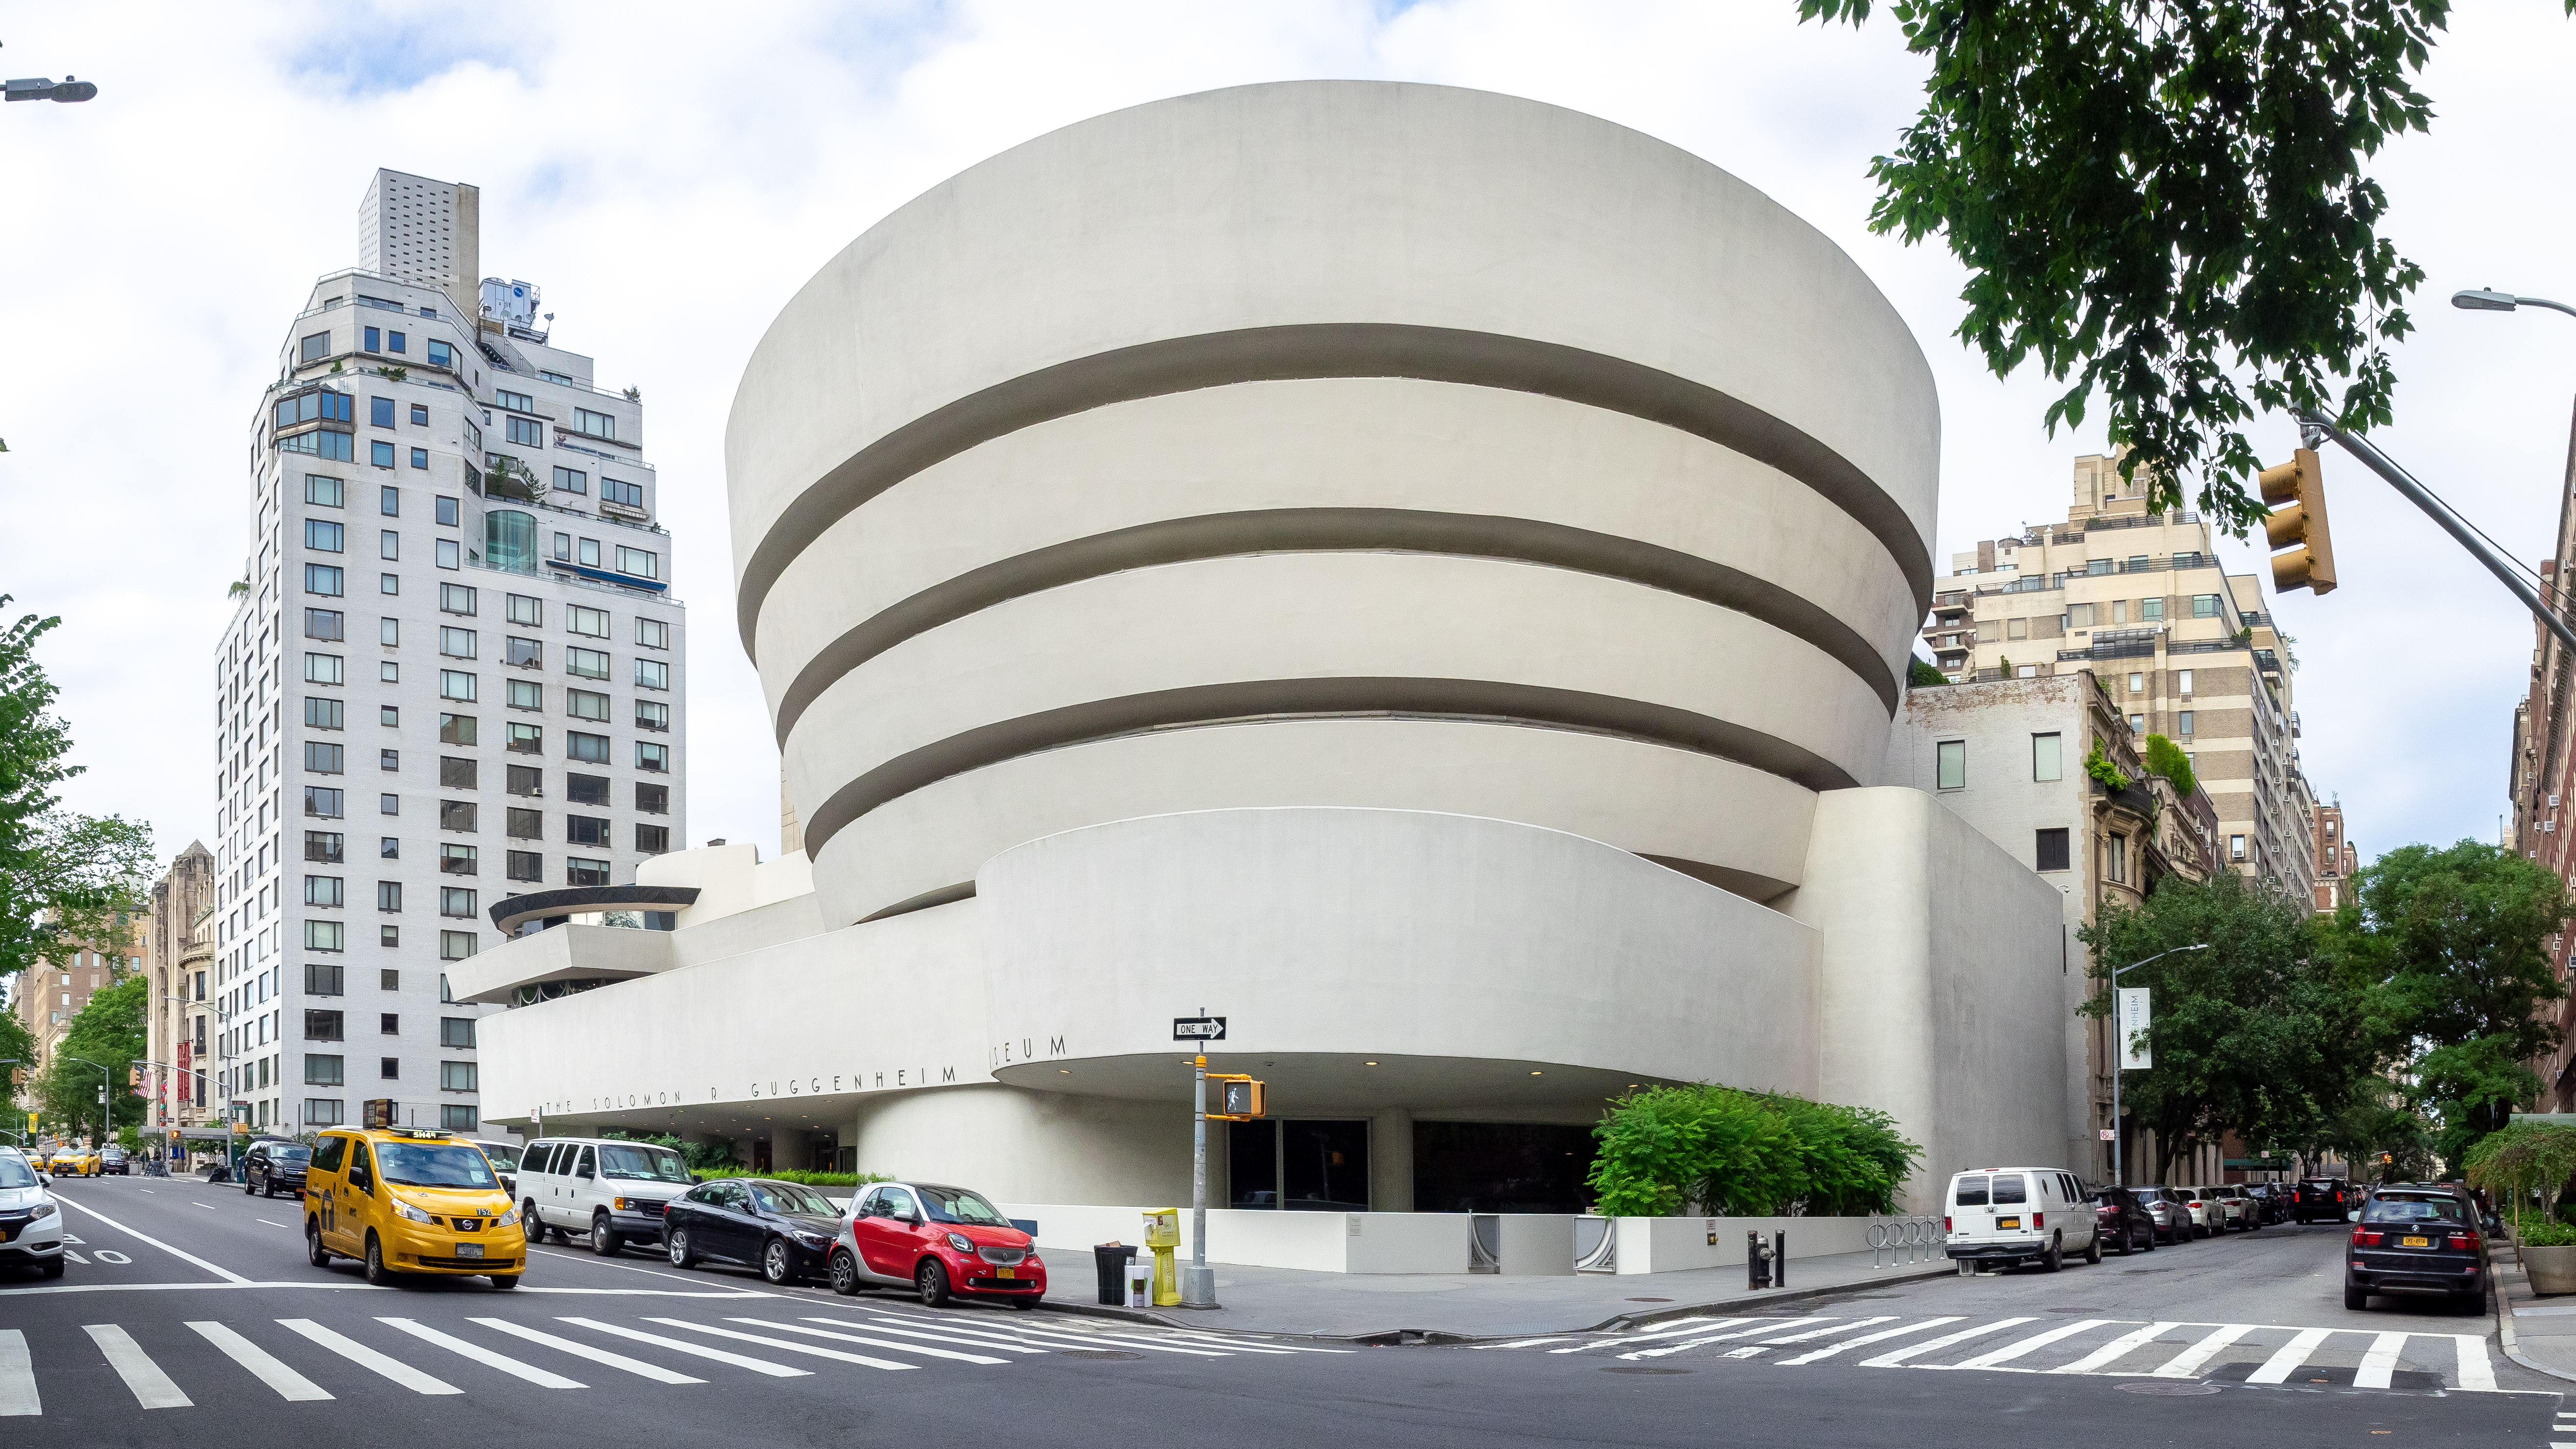 Solomon R. Guggenheim Museum (48059131351).jpg